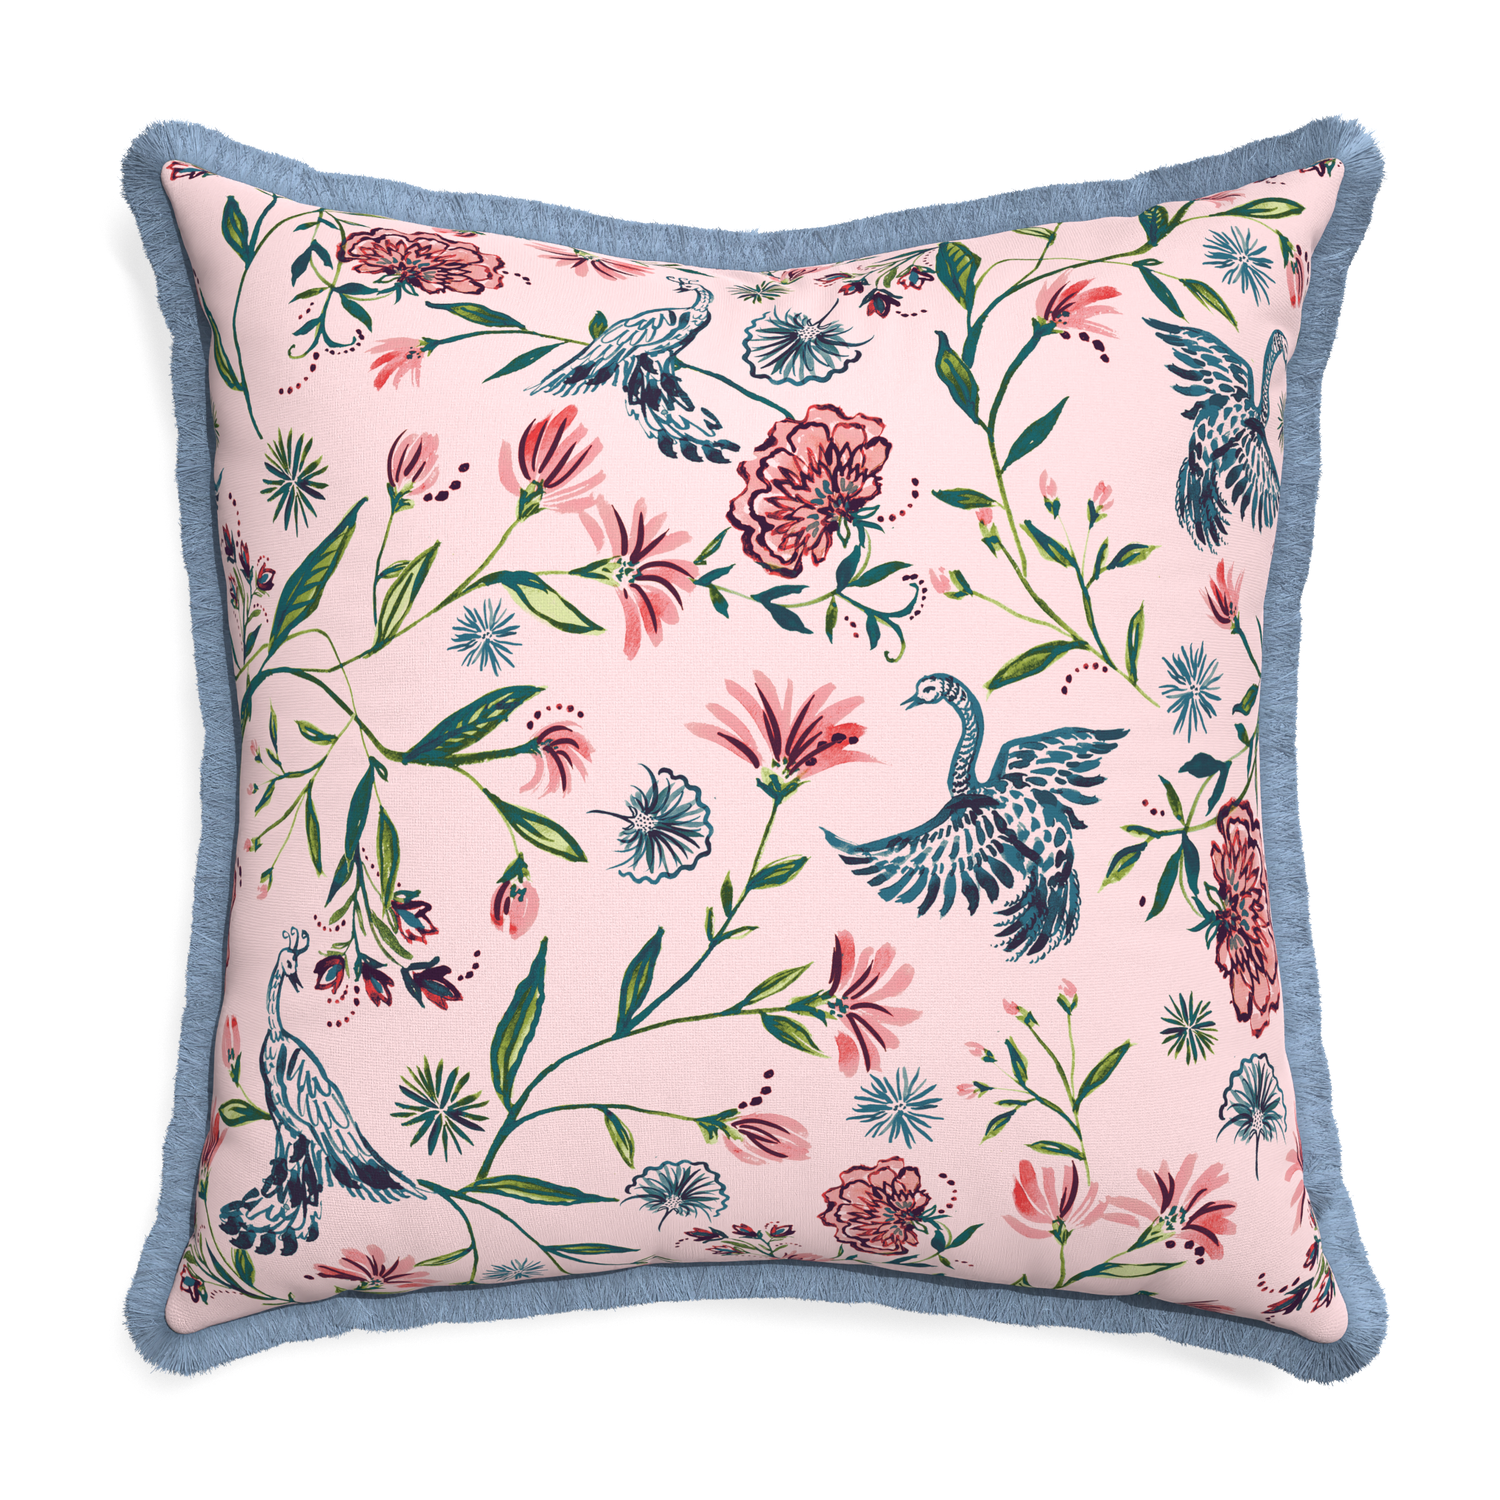 Euro-sham daphne rose custom pillow with sky fringe on white background